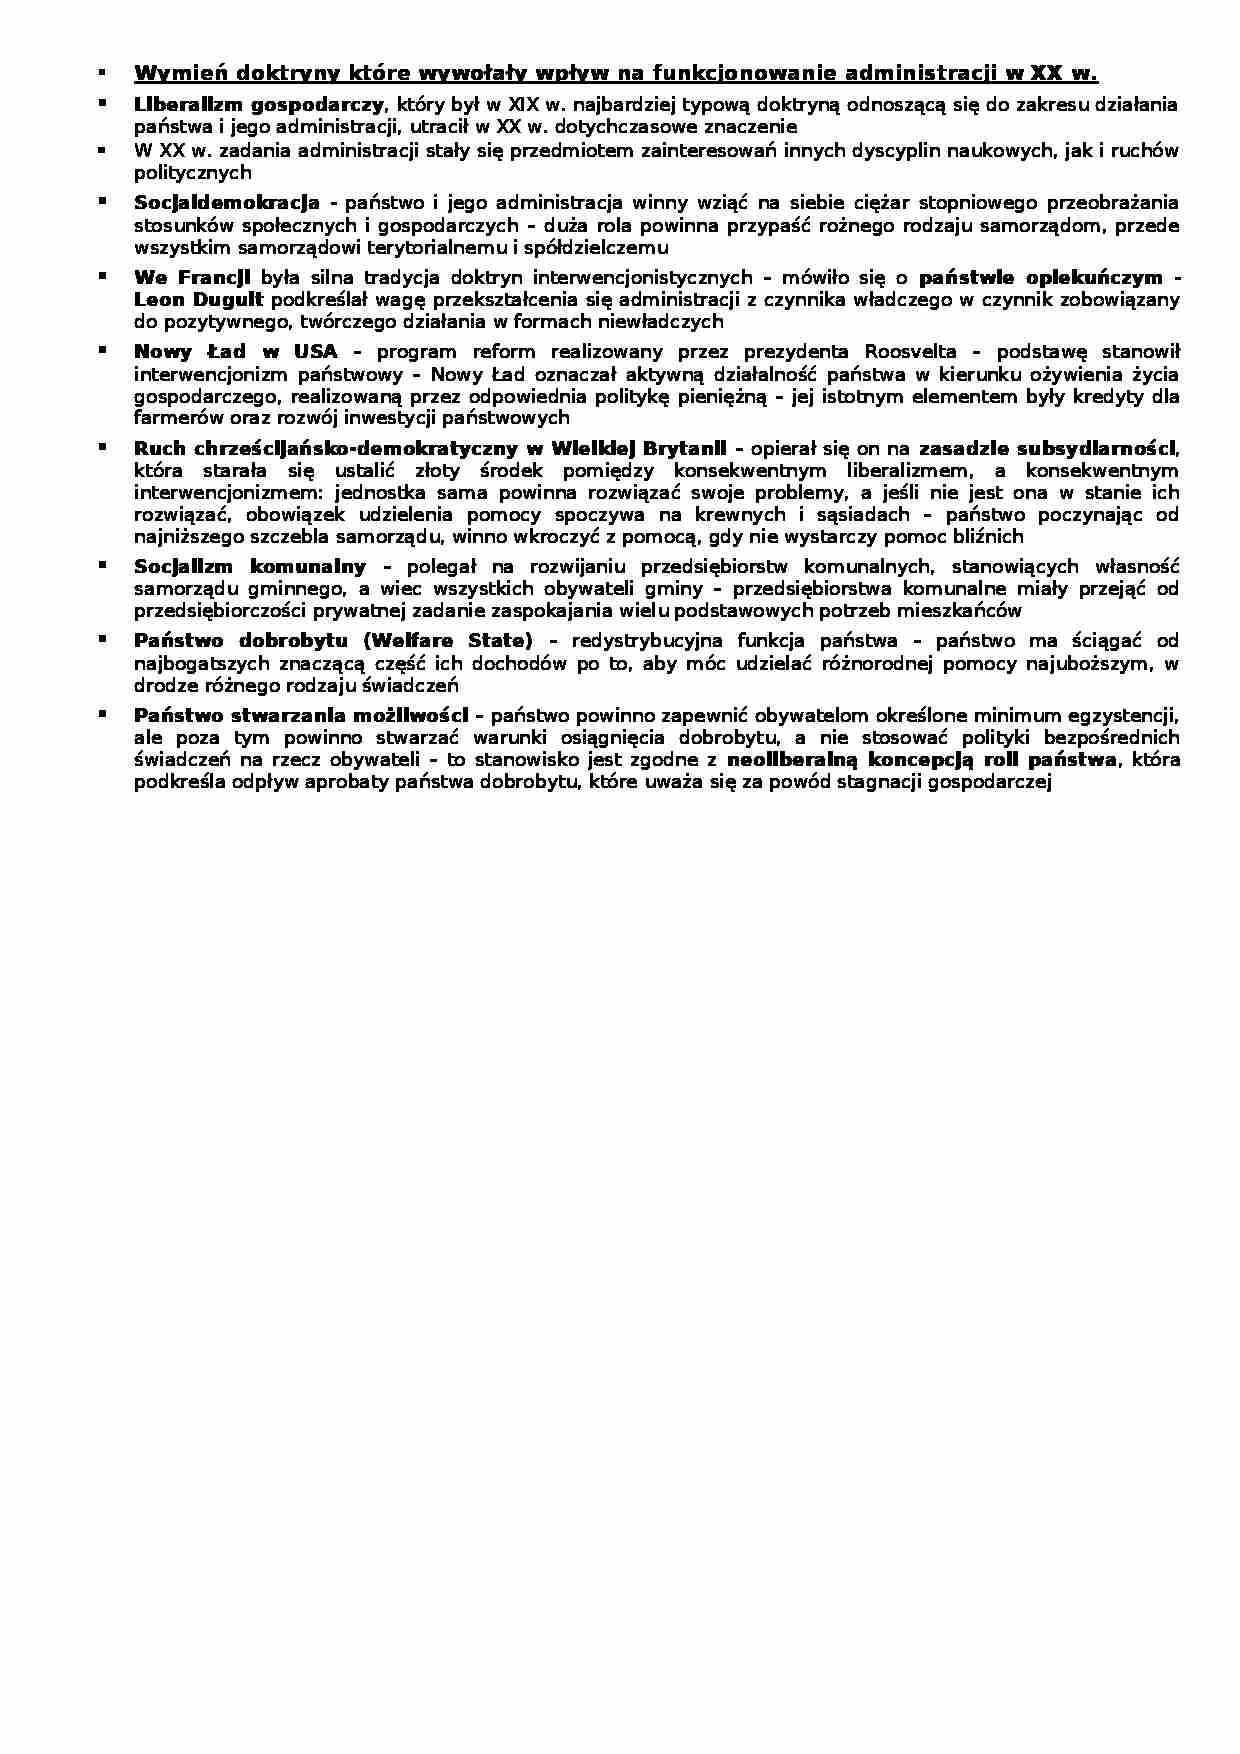 Doktryny - funkcjonowanie administracji - wykład - strona 1